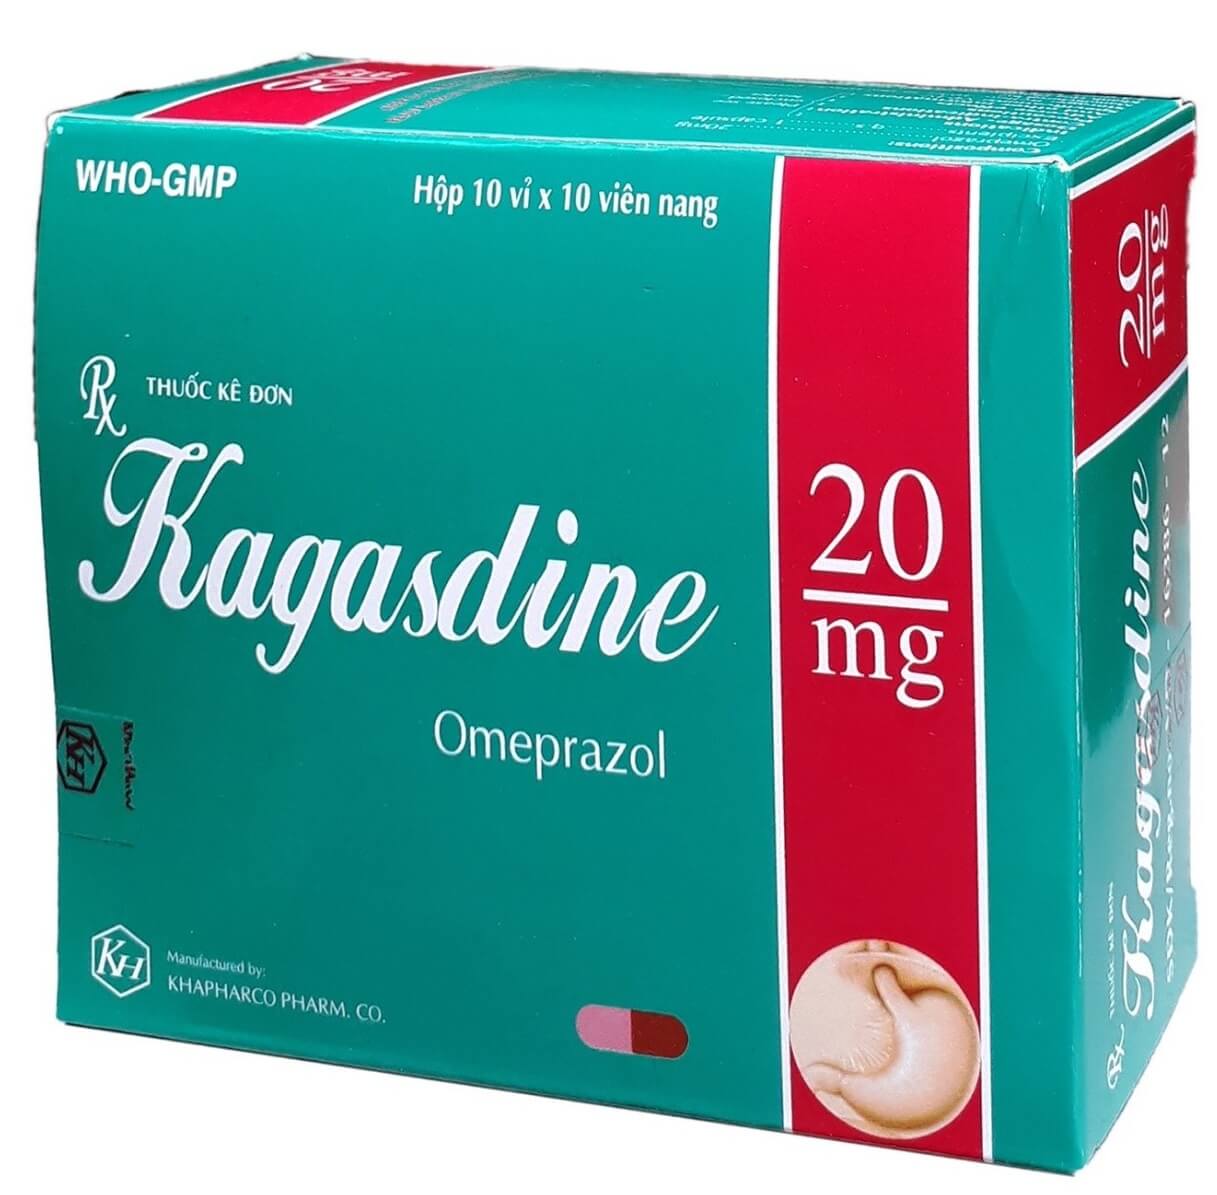 Cách sử dụng và liều dùng Kagasdine 20mg